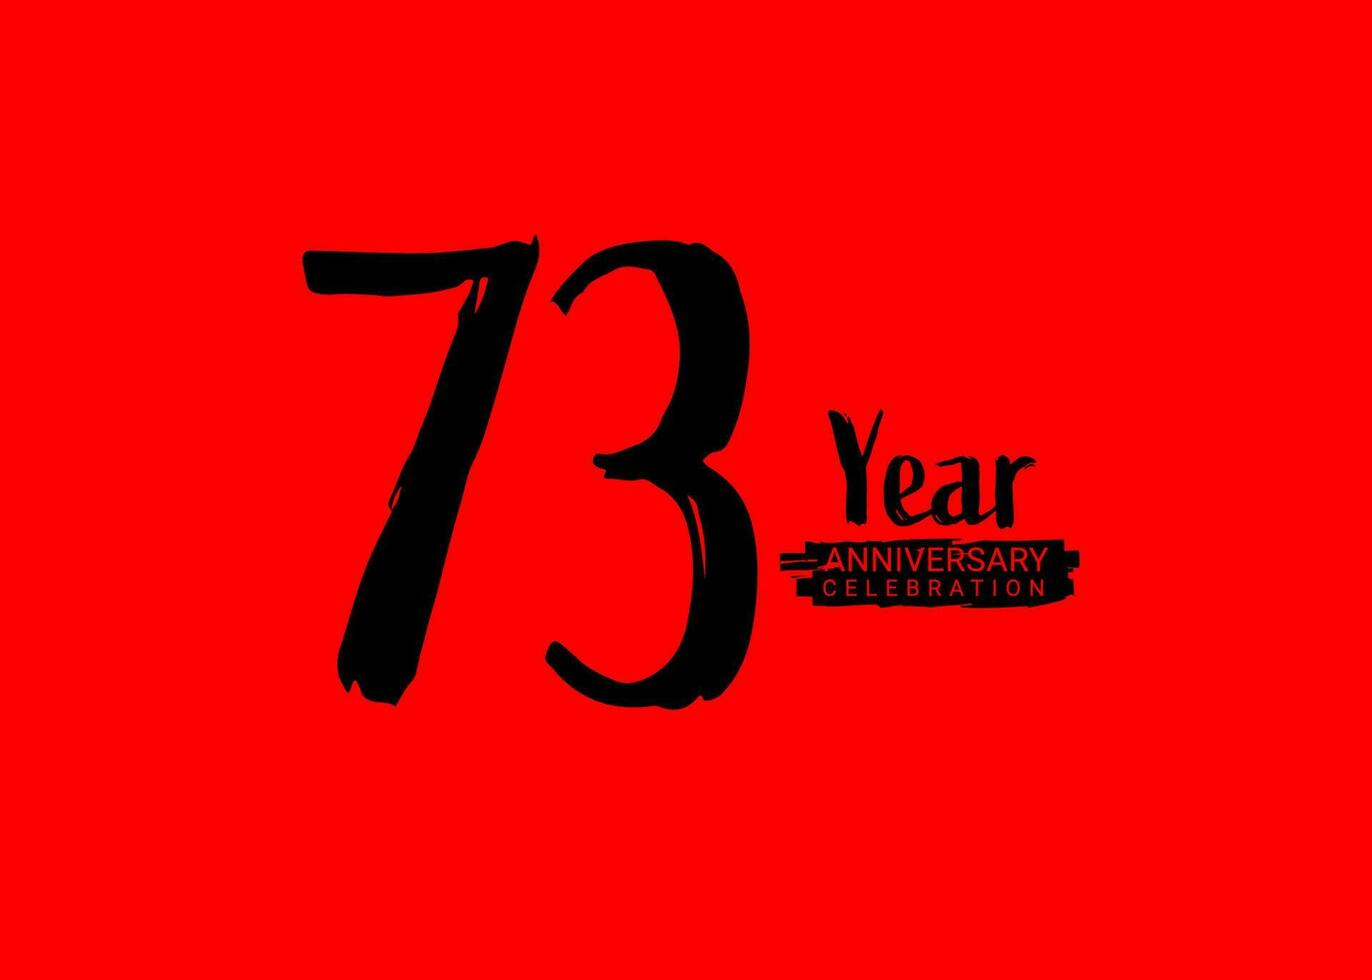 73 år årsdag firande logotyp på röd bakgrund, 73 siffra logotyp design, 73:a födelsedag logotyp, logotyp årsdag, vektor årsdag för firande, affisch, inbjudan kort